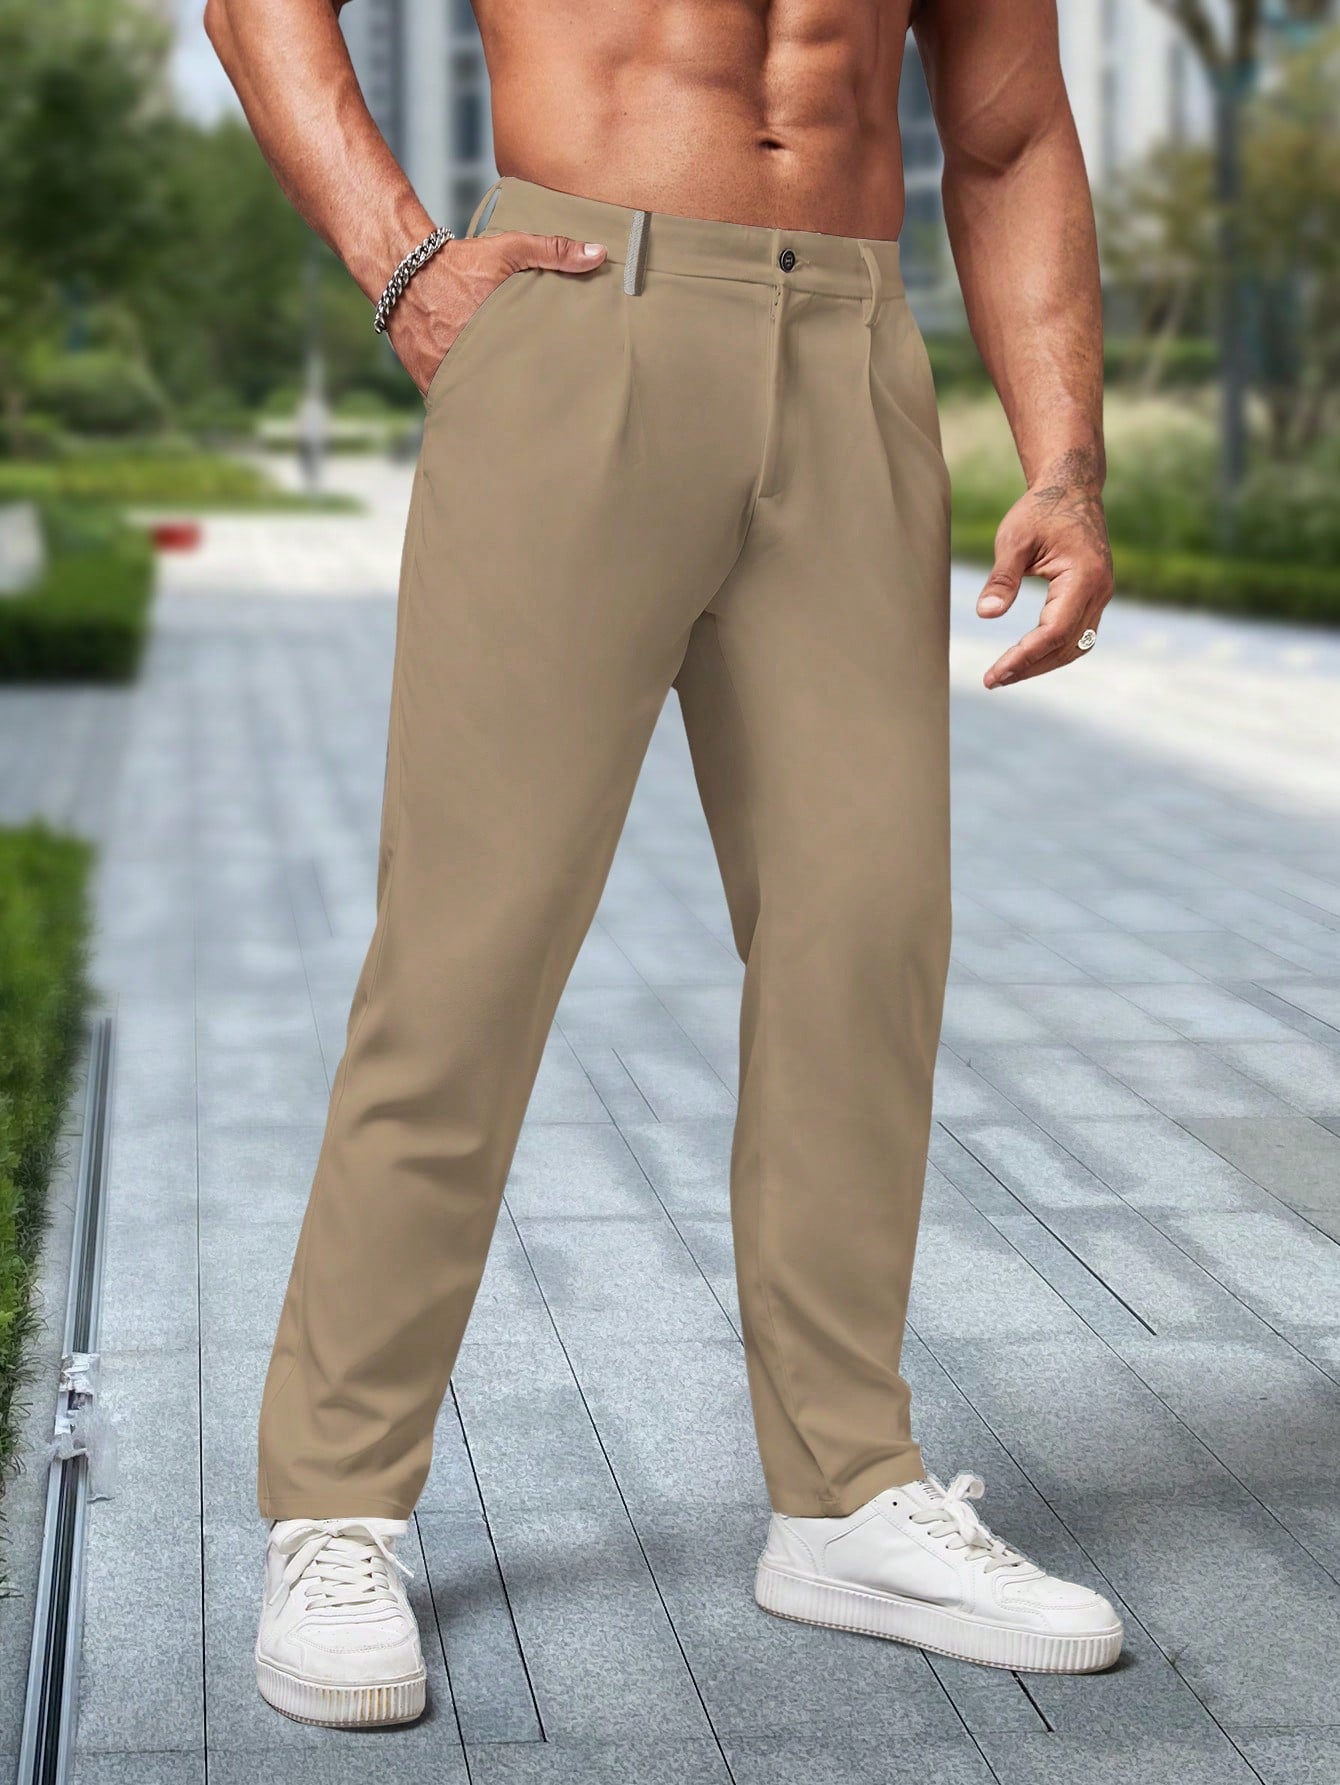 Men's Business Style Solid Color Suit Pant